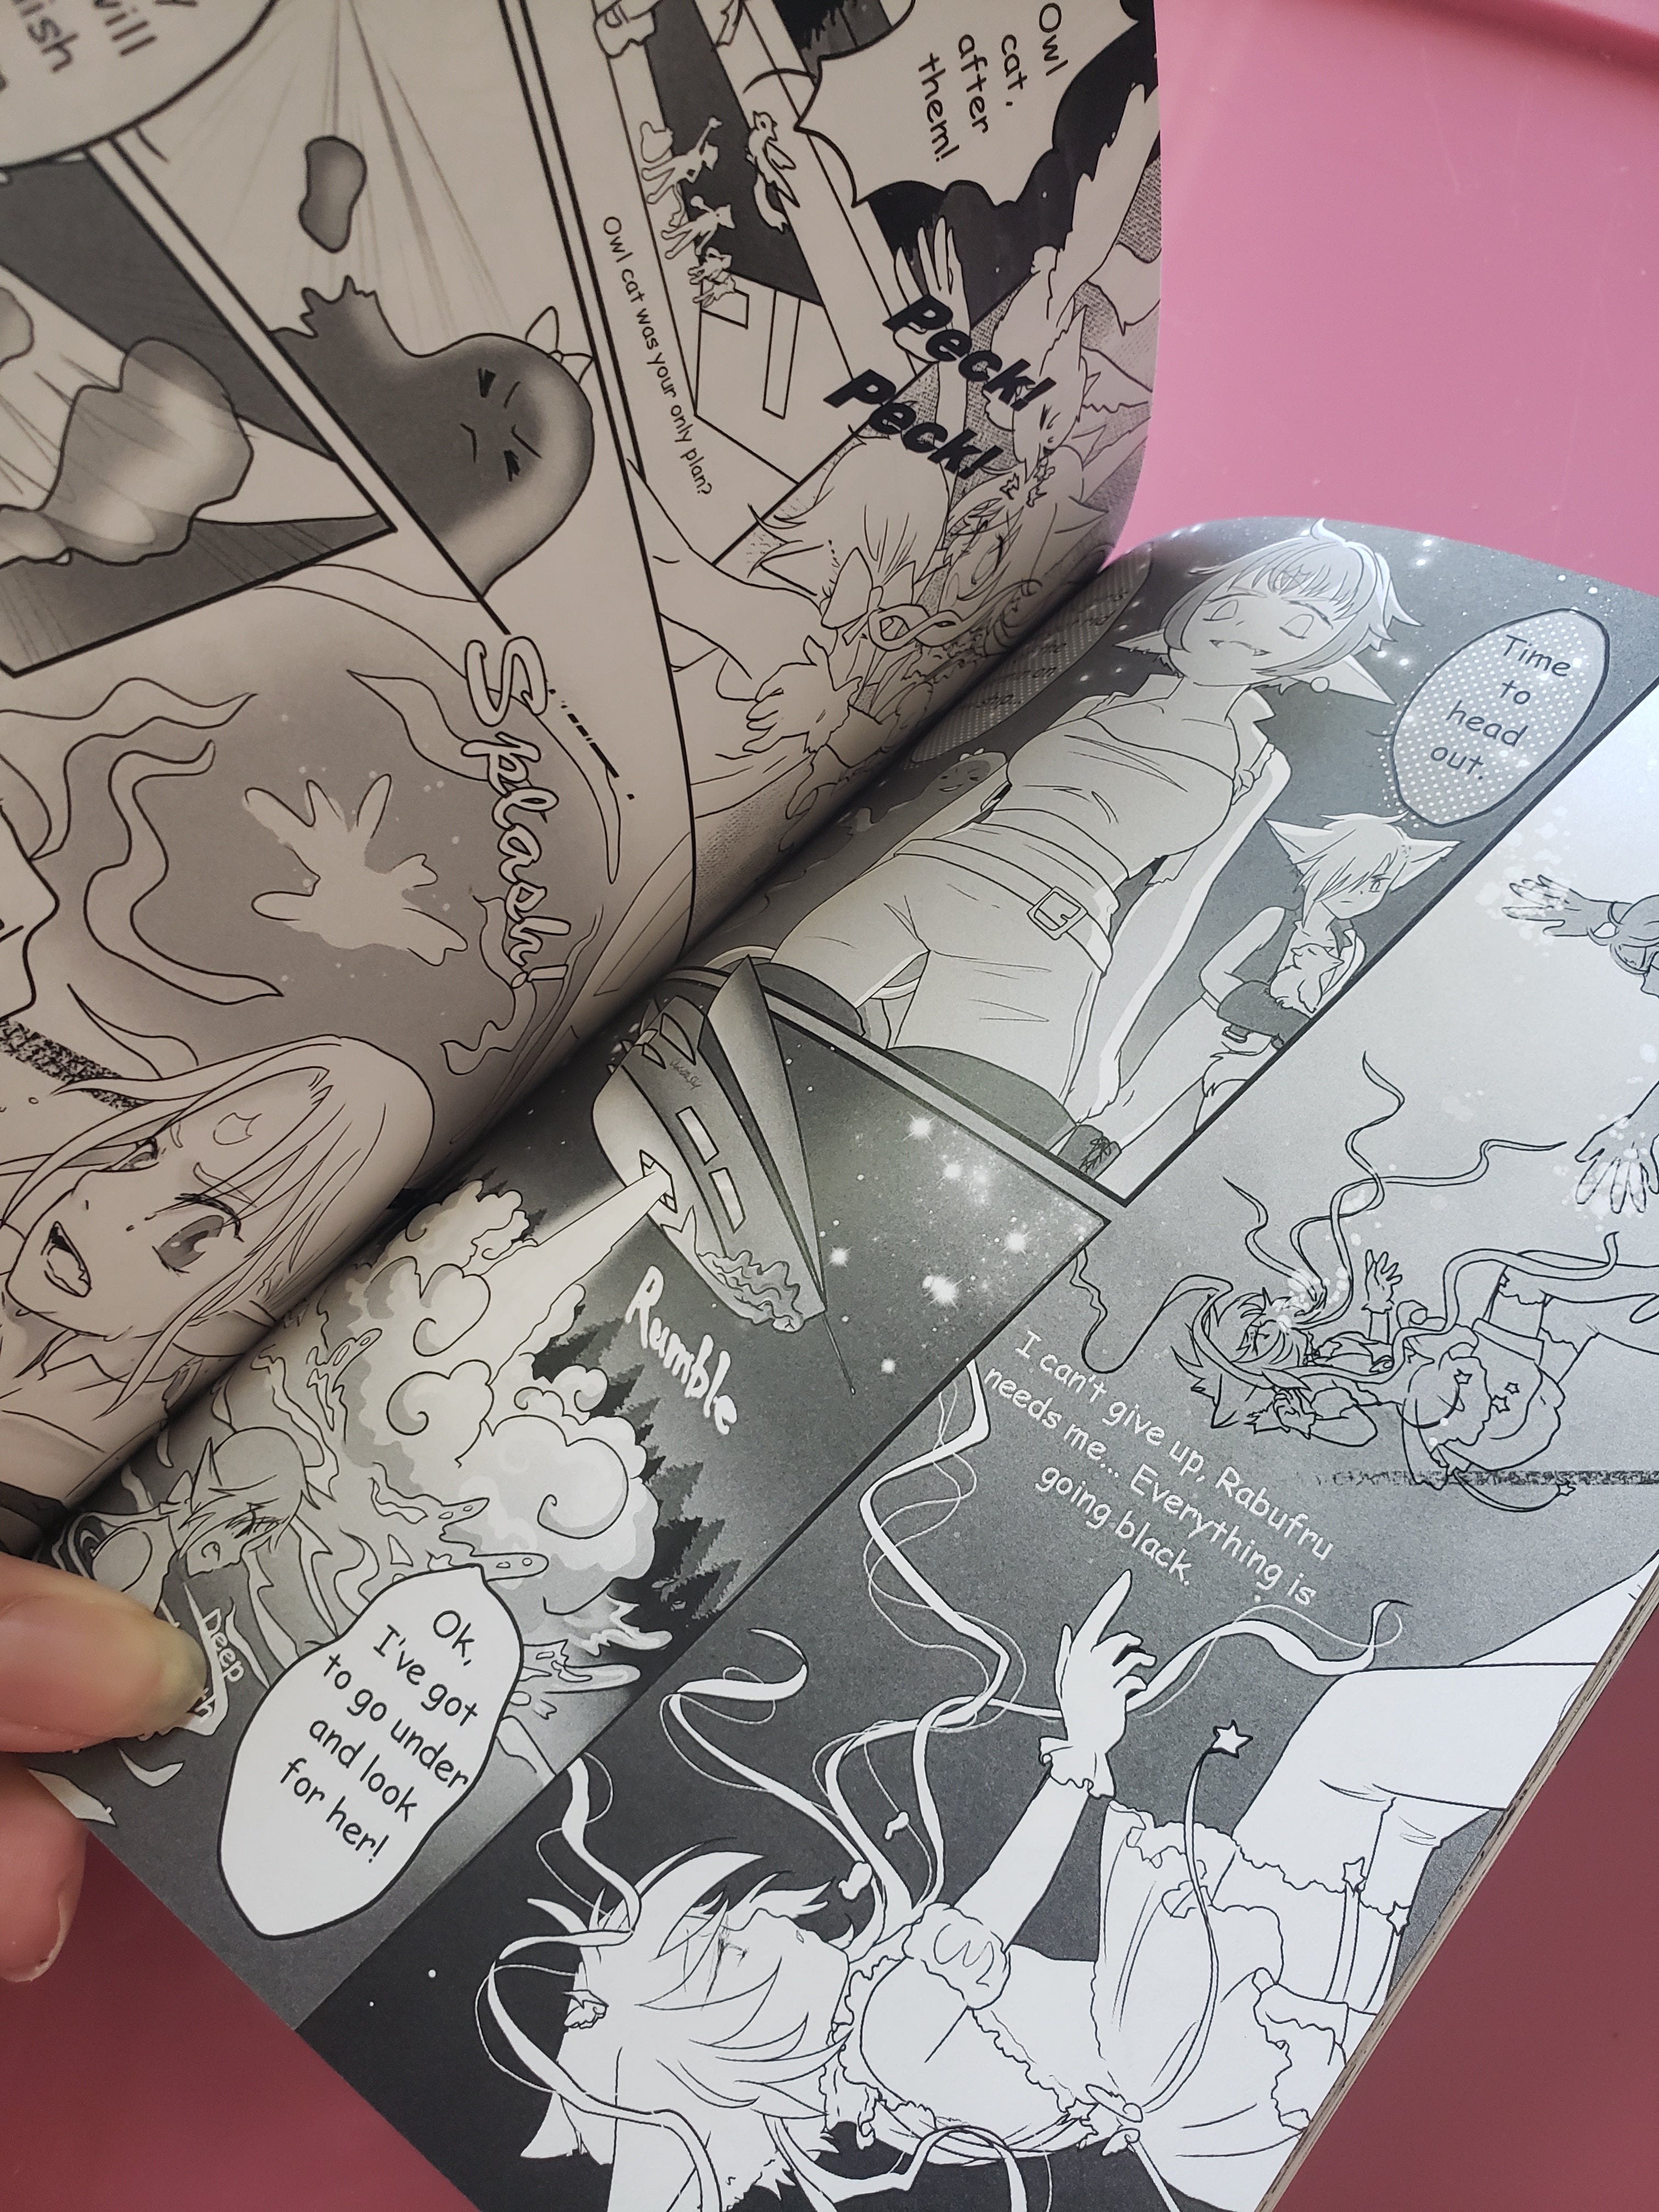 Magical Princess Sky original manga bundle